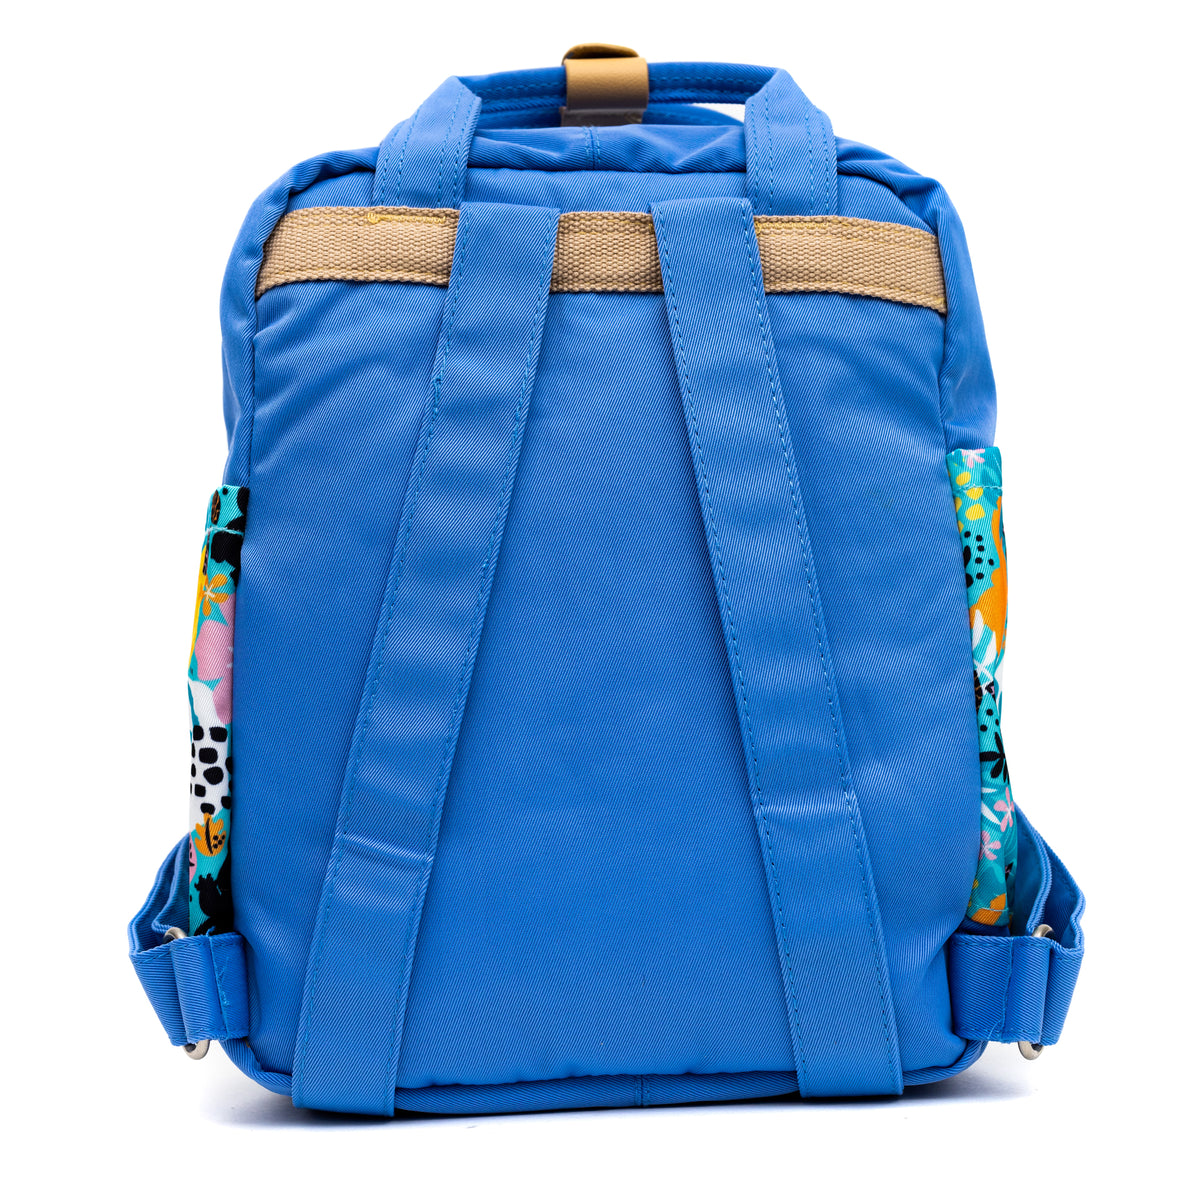 Disney Lilo and Stitch: Stitch Twill Multi-Compartment Mini Backpack